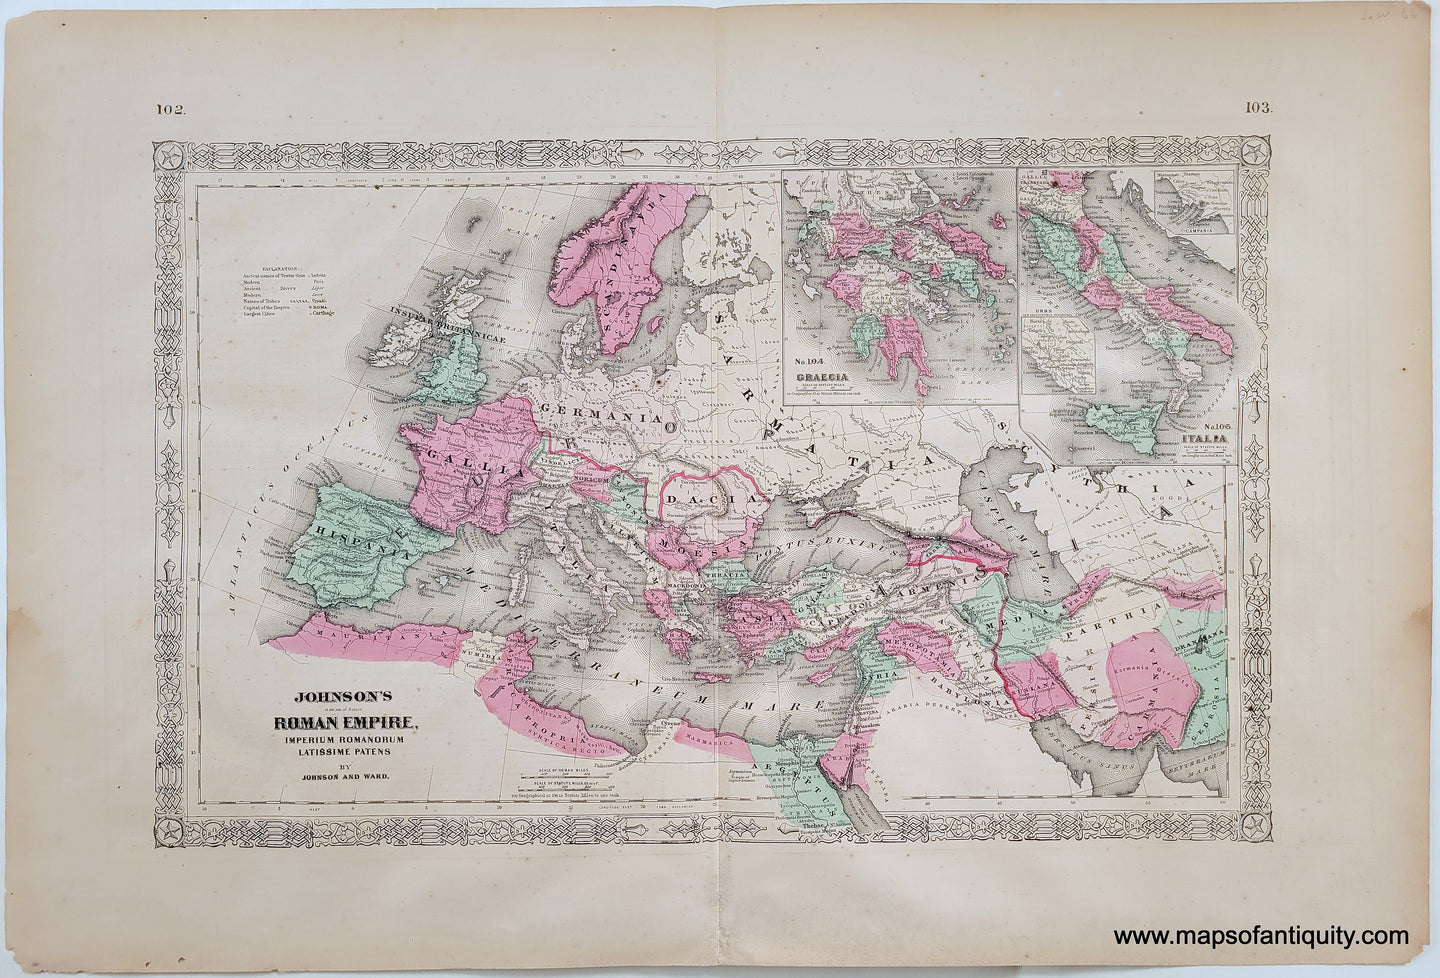 Antique-Map-Johnson's-Roman-Empire-Imperium-Romanorum-Latissme-Patens-1866-1800s-19th-century-johnson-browning-maps-of-Antiquity